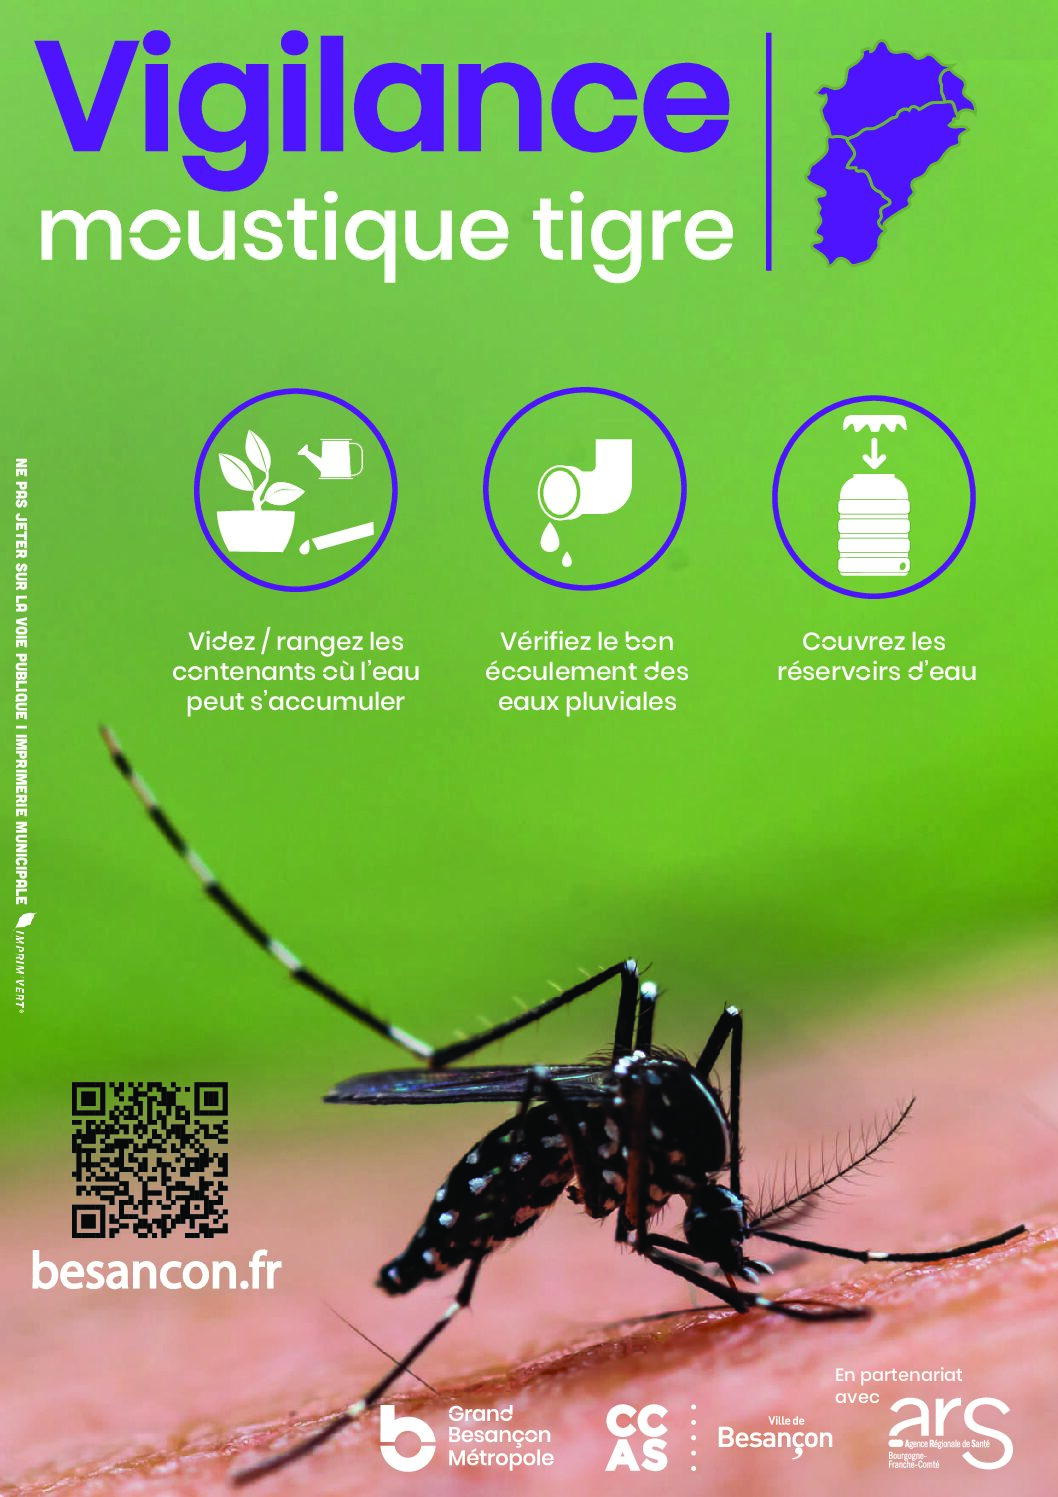 Moustique tigre : précautions et signalement